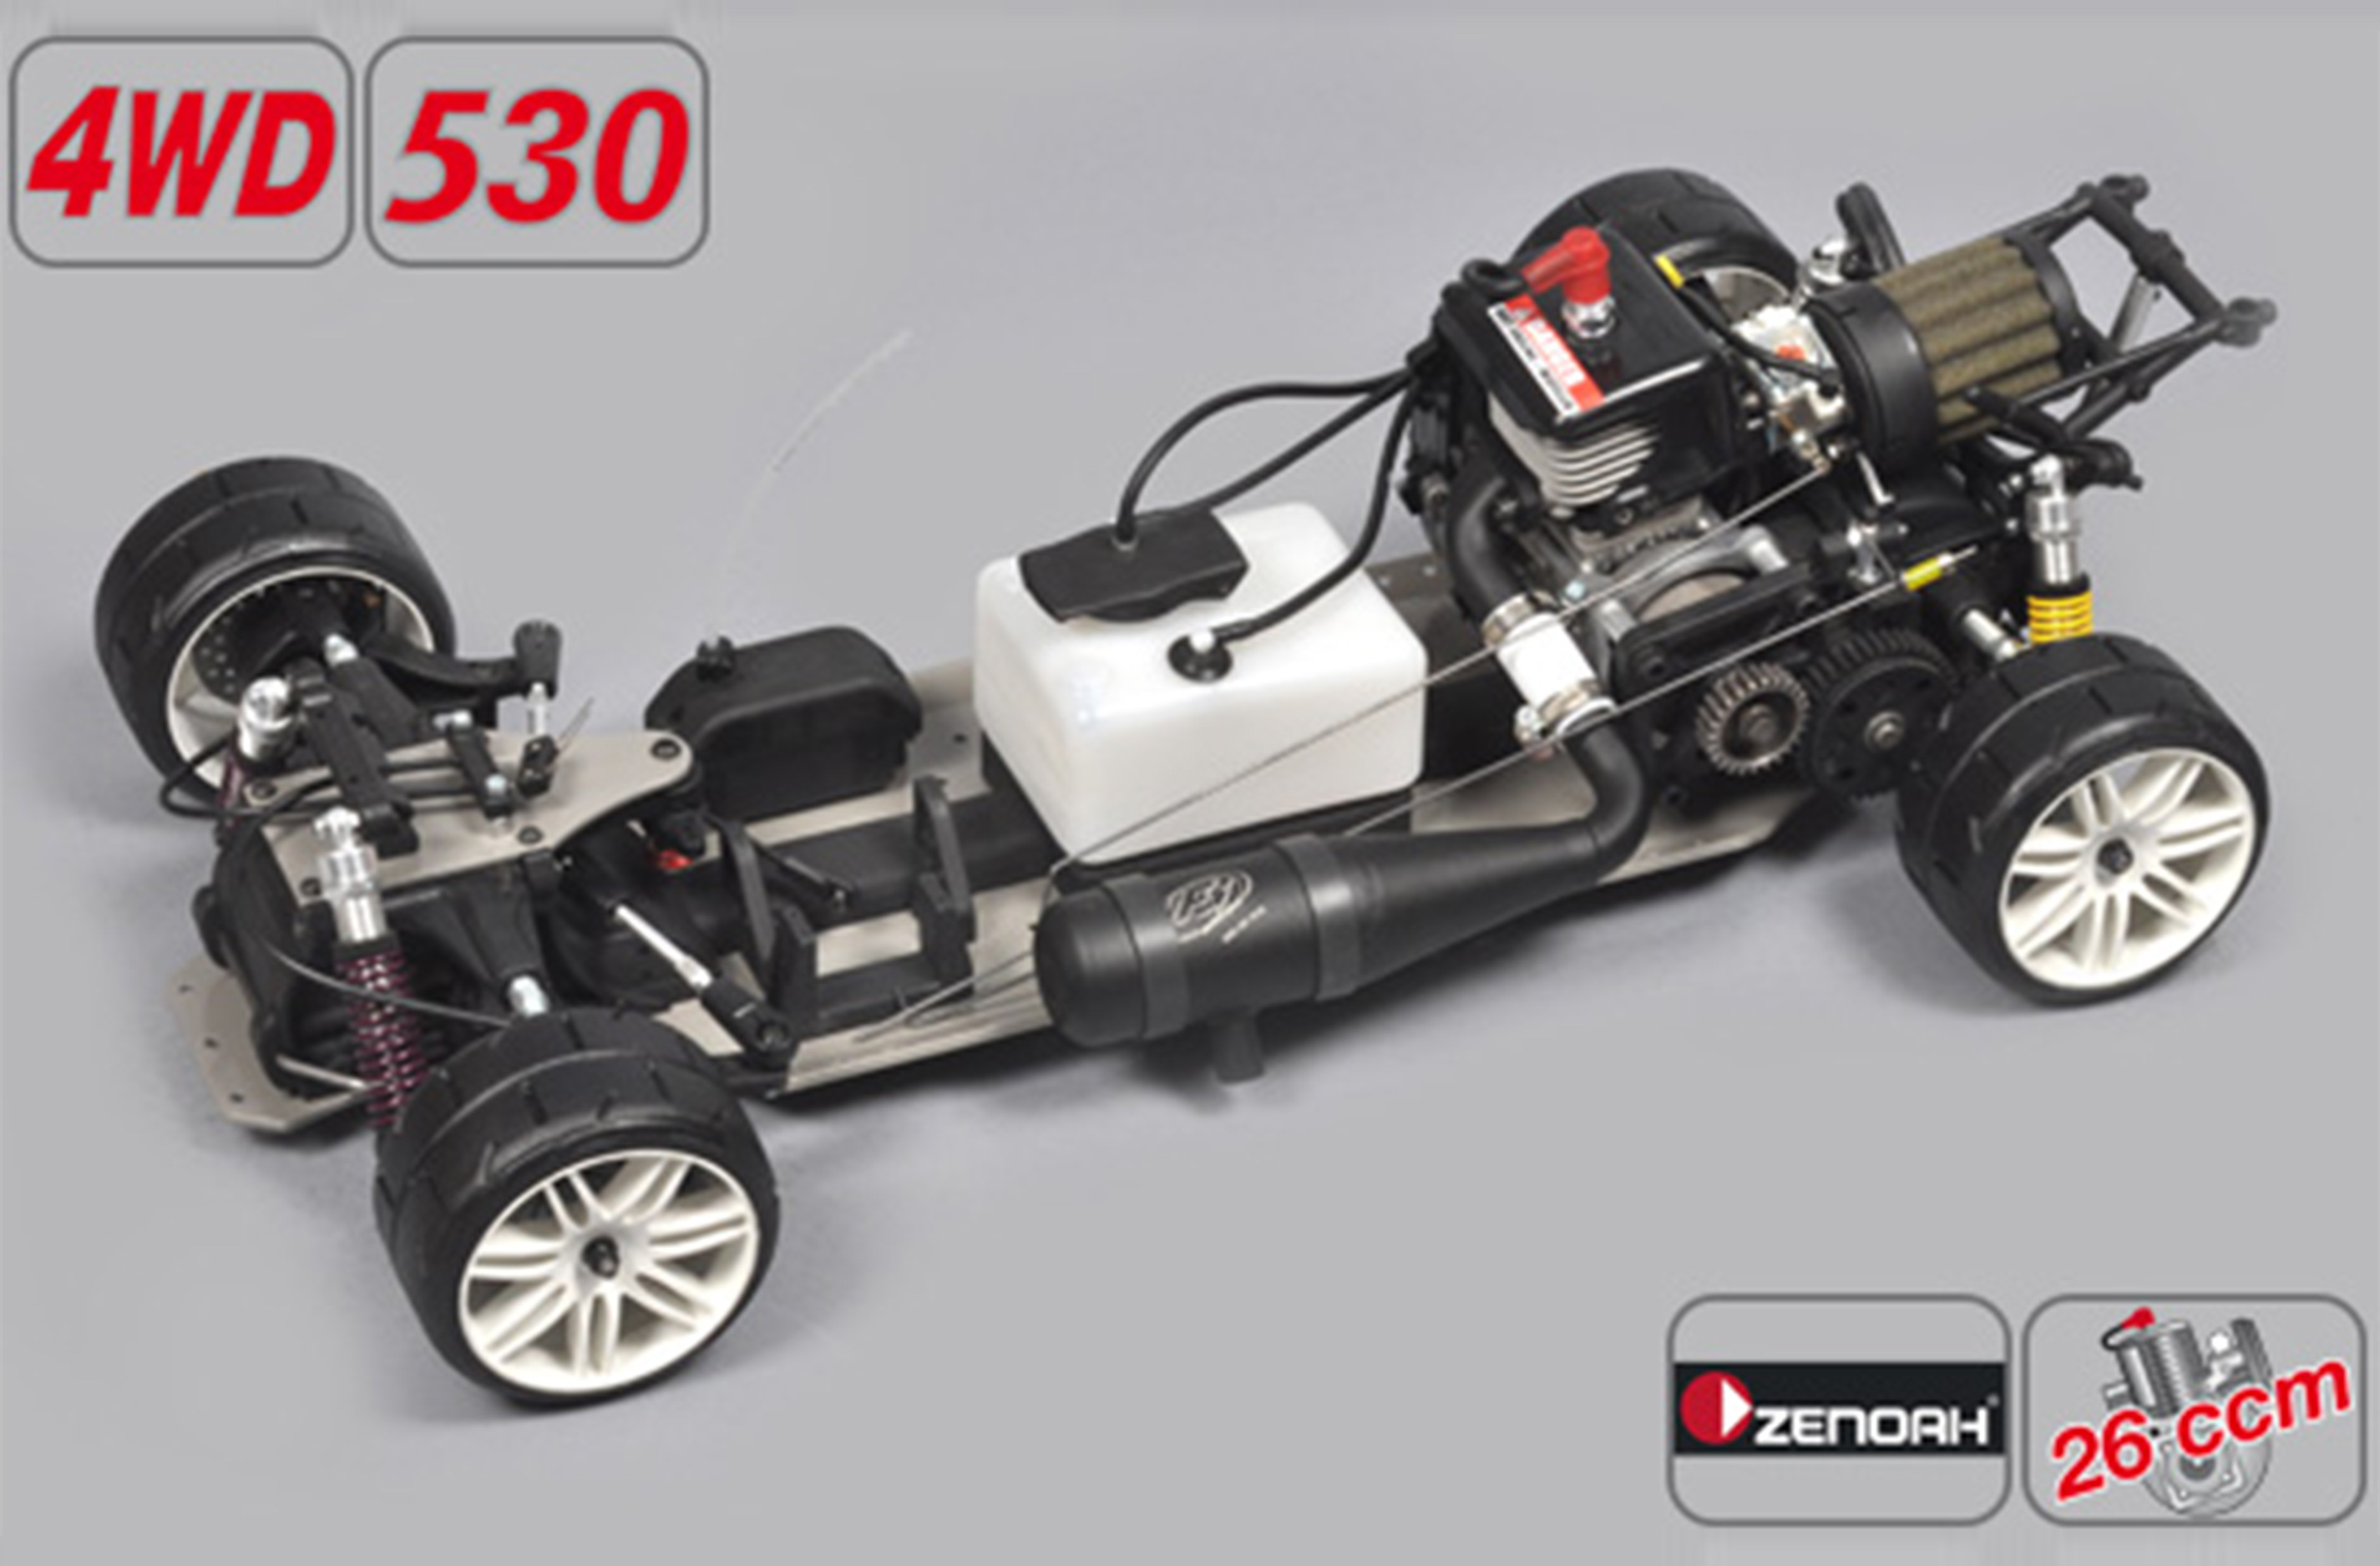 154100Z Sportsline 4WD 530er Radstand, Zenoah G260 Motor